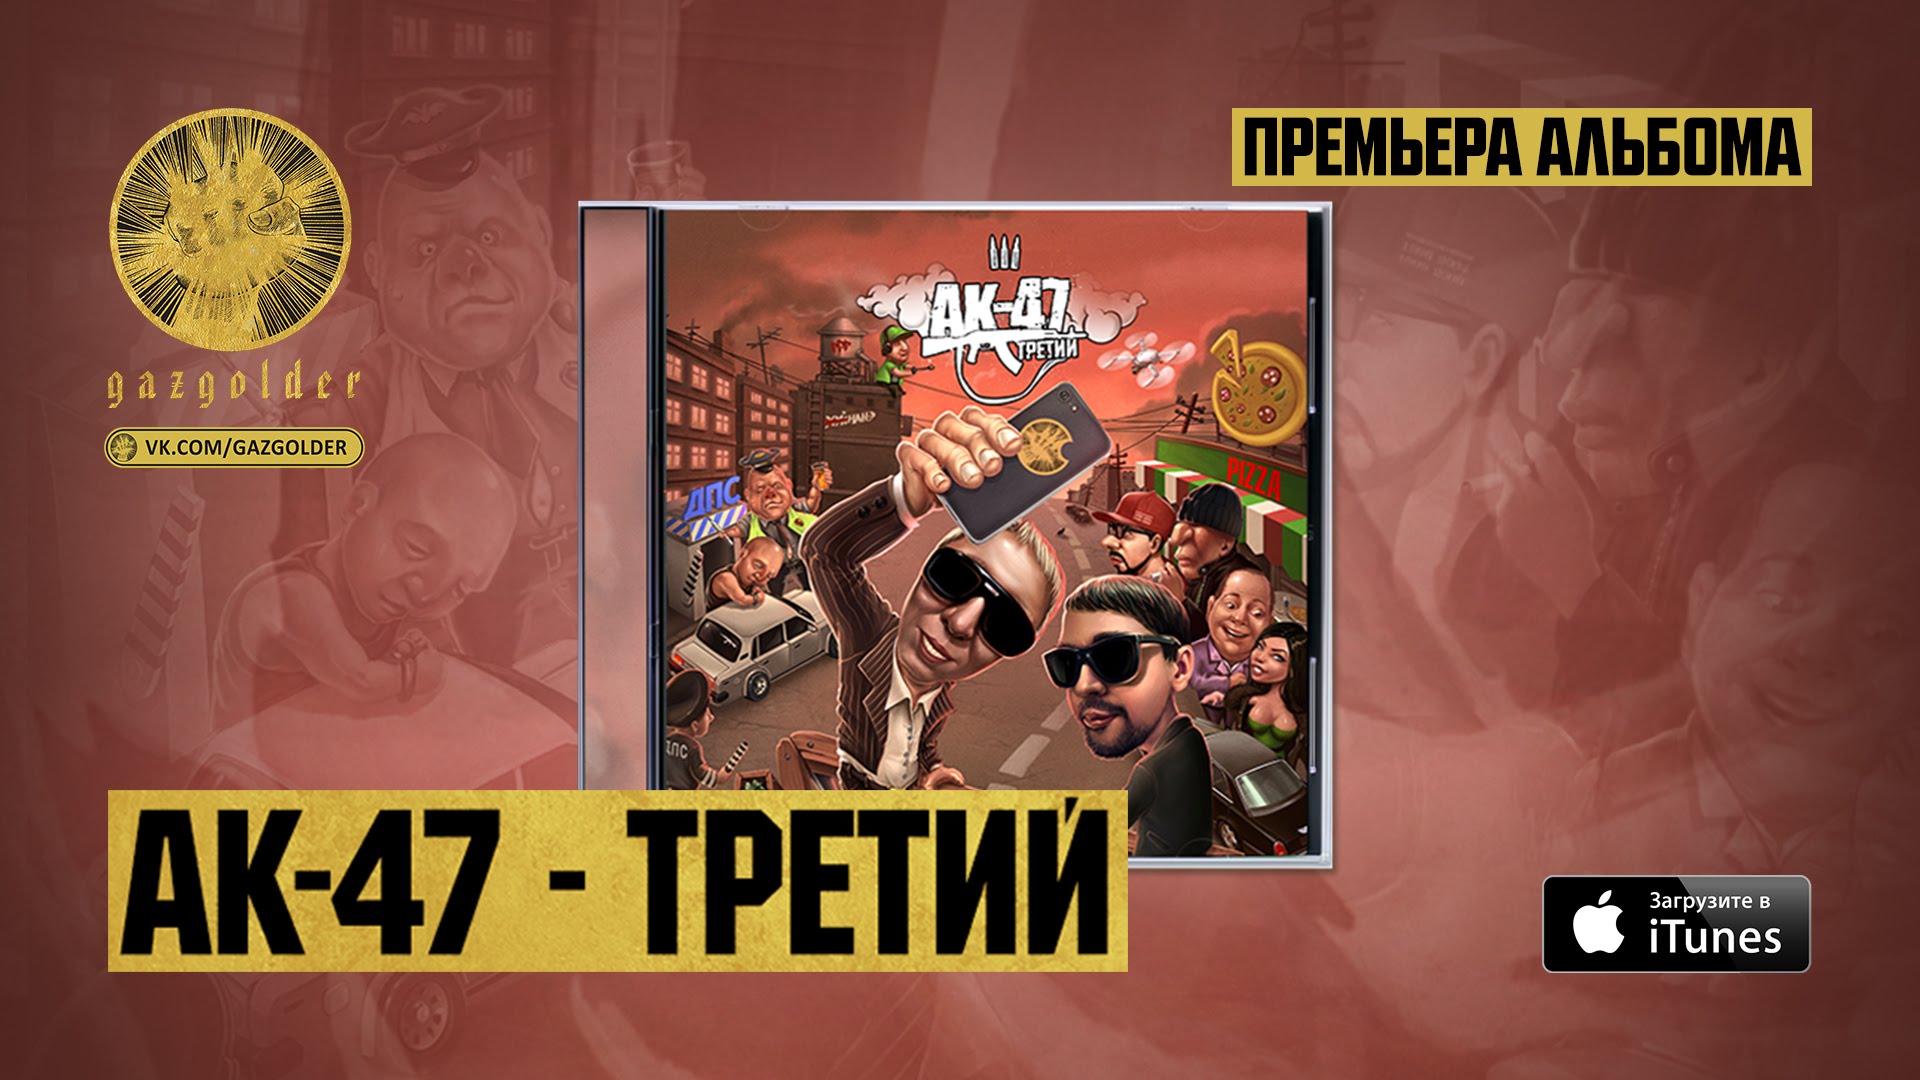 Ак трап. Третий АК-47. АК 47 третий альбом. АК 47 обложка. Русский Trap AK-47.